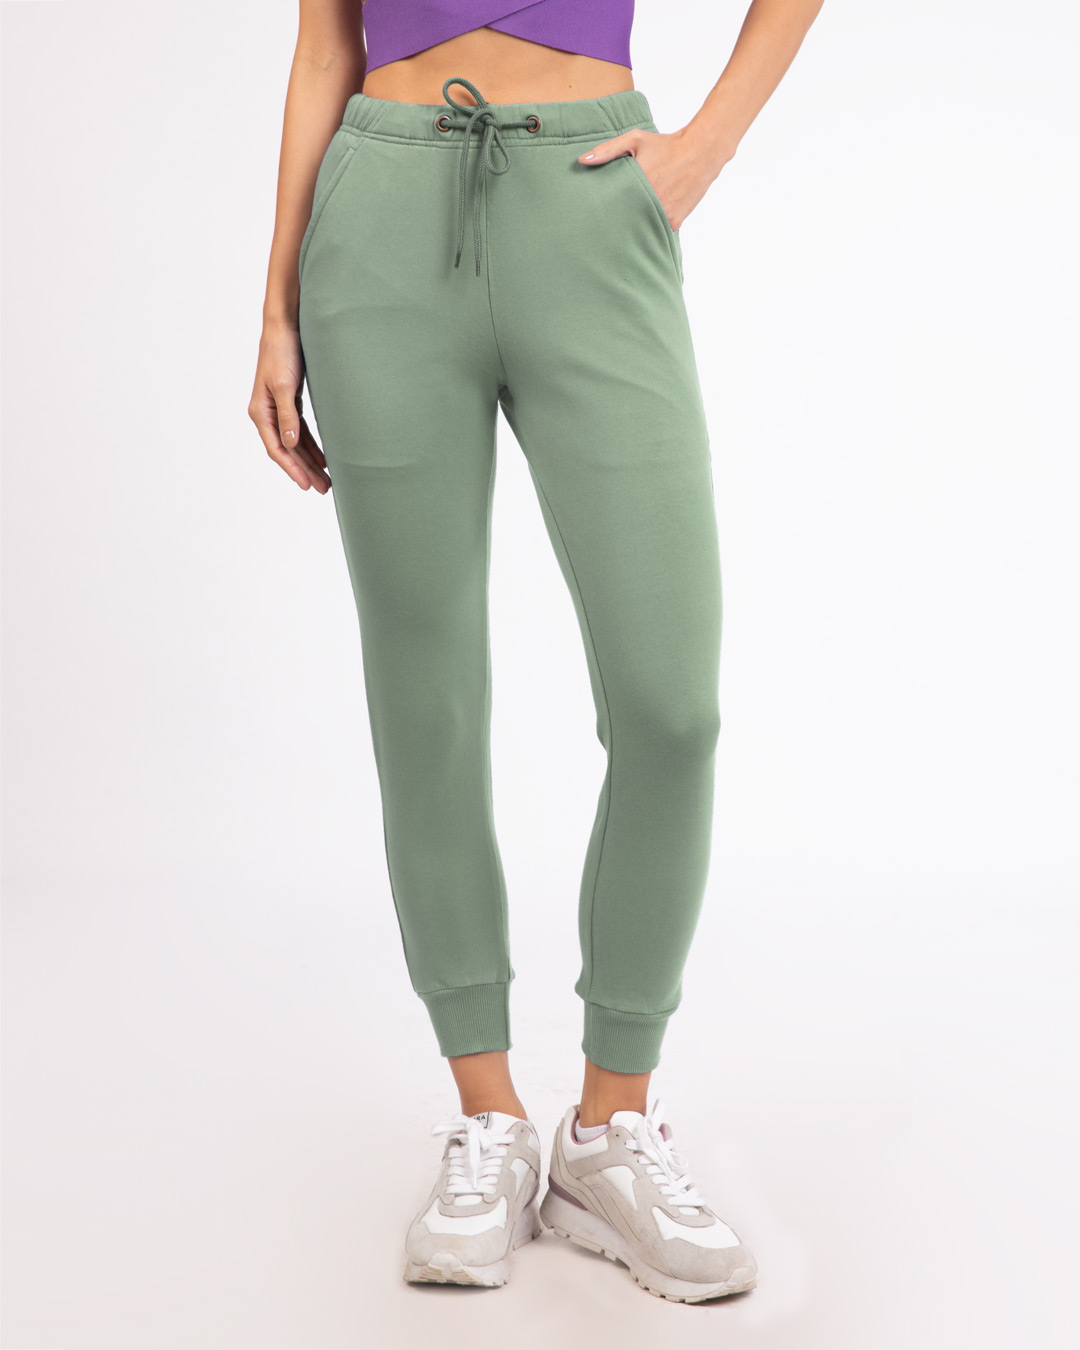 Buy Laurel Green Casual Jogger Pant for Women green Online at Bewakoof